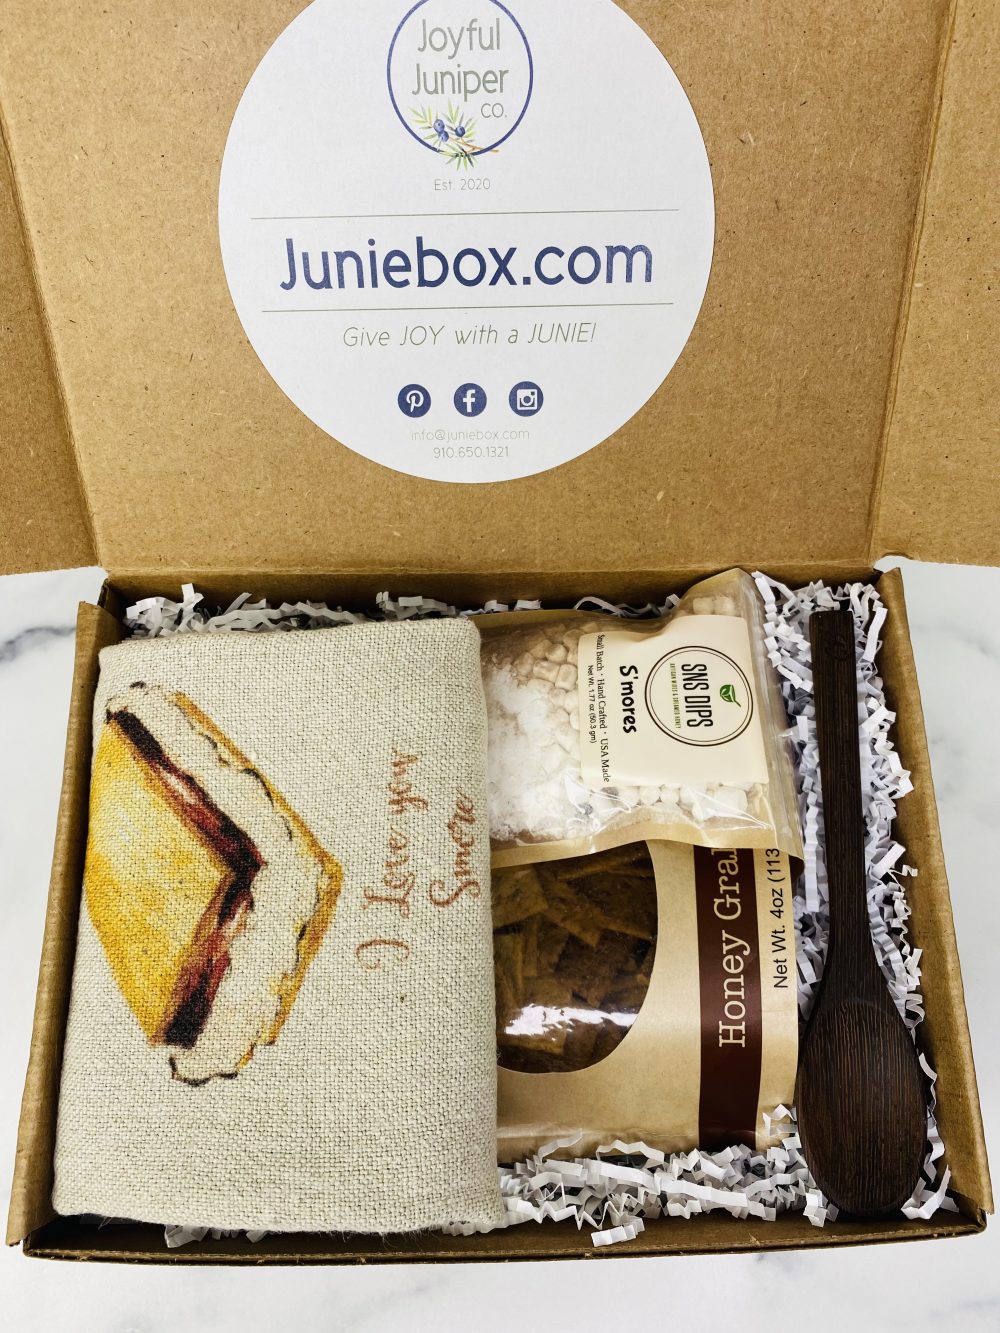 The “Love You S’more” Mini Box